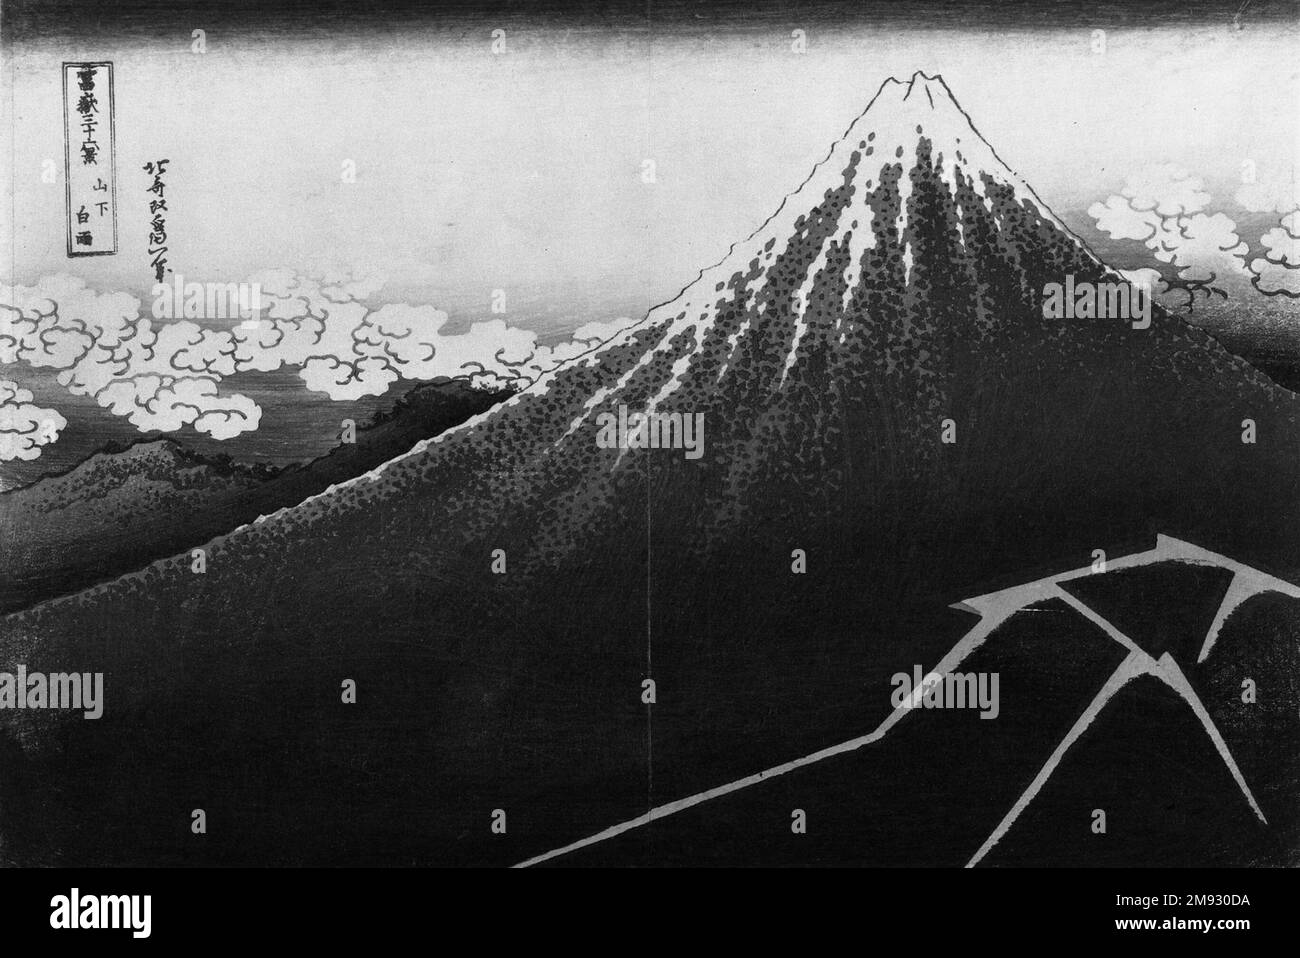 Regenschauer unter dem Gipfel aus der Serie 36 Ausblicke auf den Berg Fuji Katsushika Hokusai (japanisch, 1760-1849). Regenschauer unter dem Gipfel, aus der Serie 36 Ausblicke auf den Berg Fuji, Ca. 1832. Farbiger Holzblock auf Papier, 9 7/8 x 14 5/8 Zoll (25,1 x 37,1 cm). Die einflussreiche Serie von Katsushika Hokusai, die den Fuji von ungewöhnlichen Aussichtspunkten zeigt, umfasst viele innovative Bilder, aber nur wenige sind so mächtig wie dieser Blick aus der Vogelperspektive auf den Gipfel mit dem Blitz darunter. Der Künstler betont die physische Masse des Berges, indem er zeigt, dass es völlig andere Wetterbedingungen geben kann Stockfoto